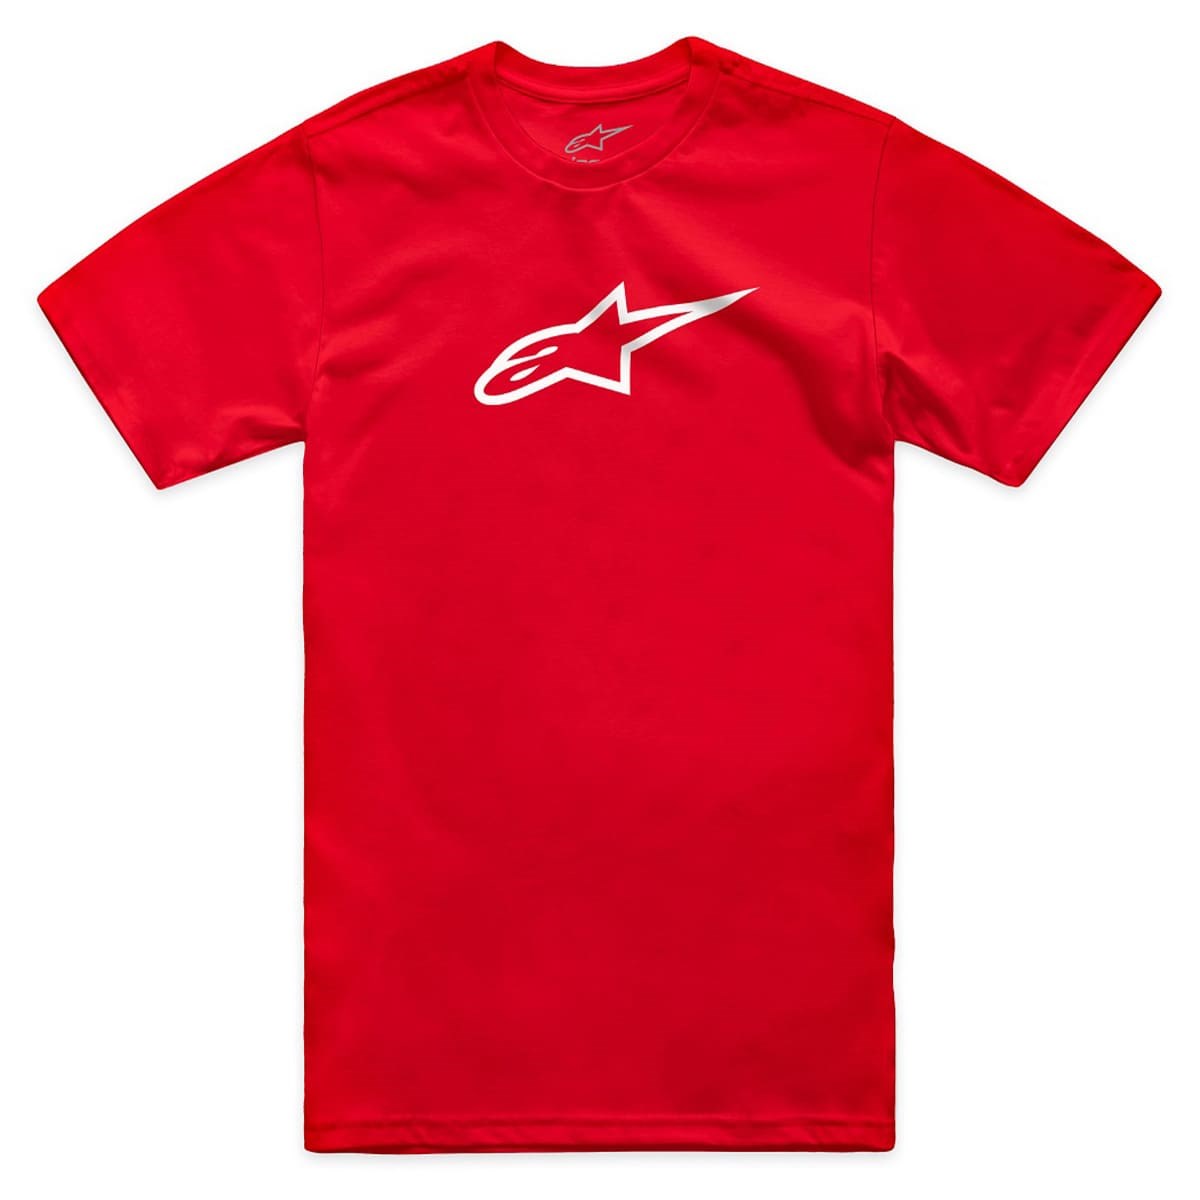 Camiseta Alpinestars Ageless 2.0